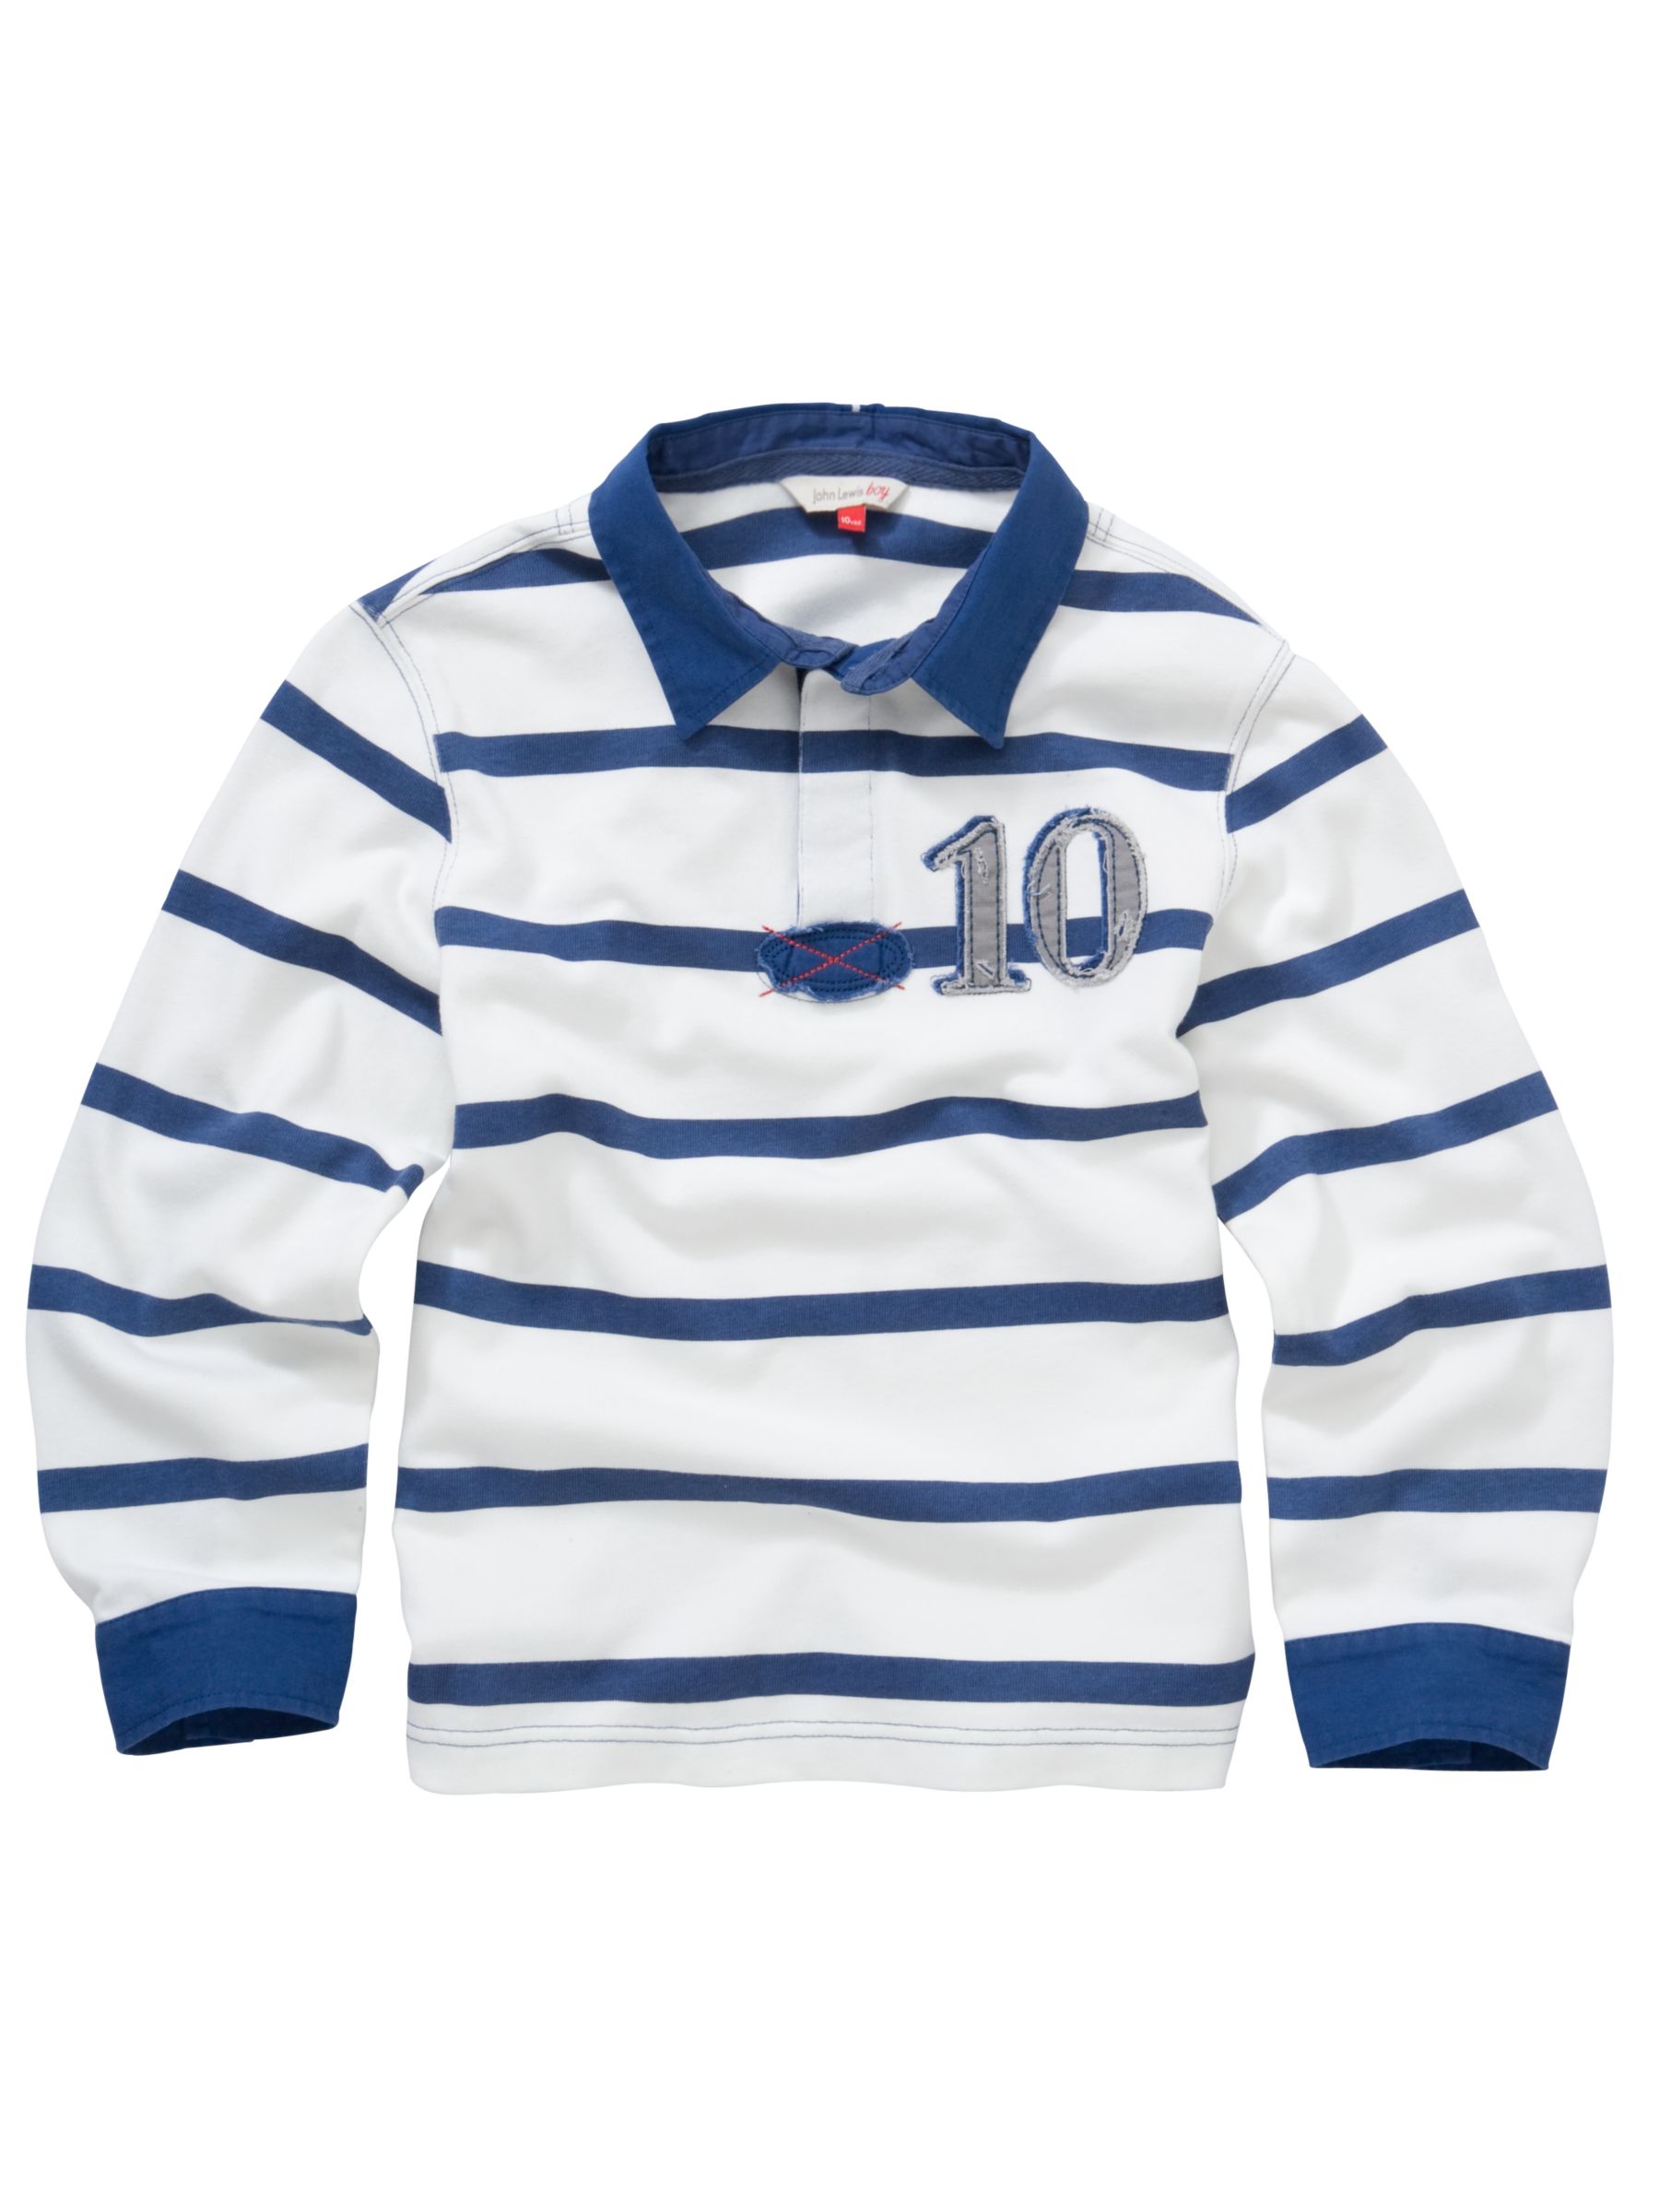 John Lewis Boy Stripe Rugby Shirt, White/navy, 4